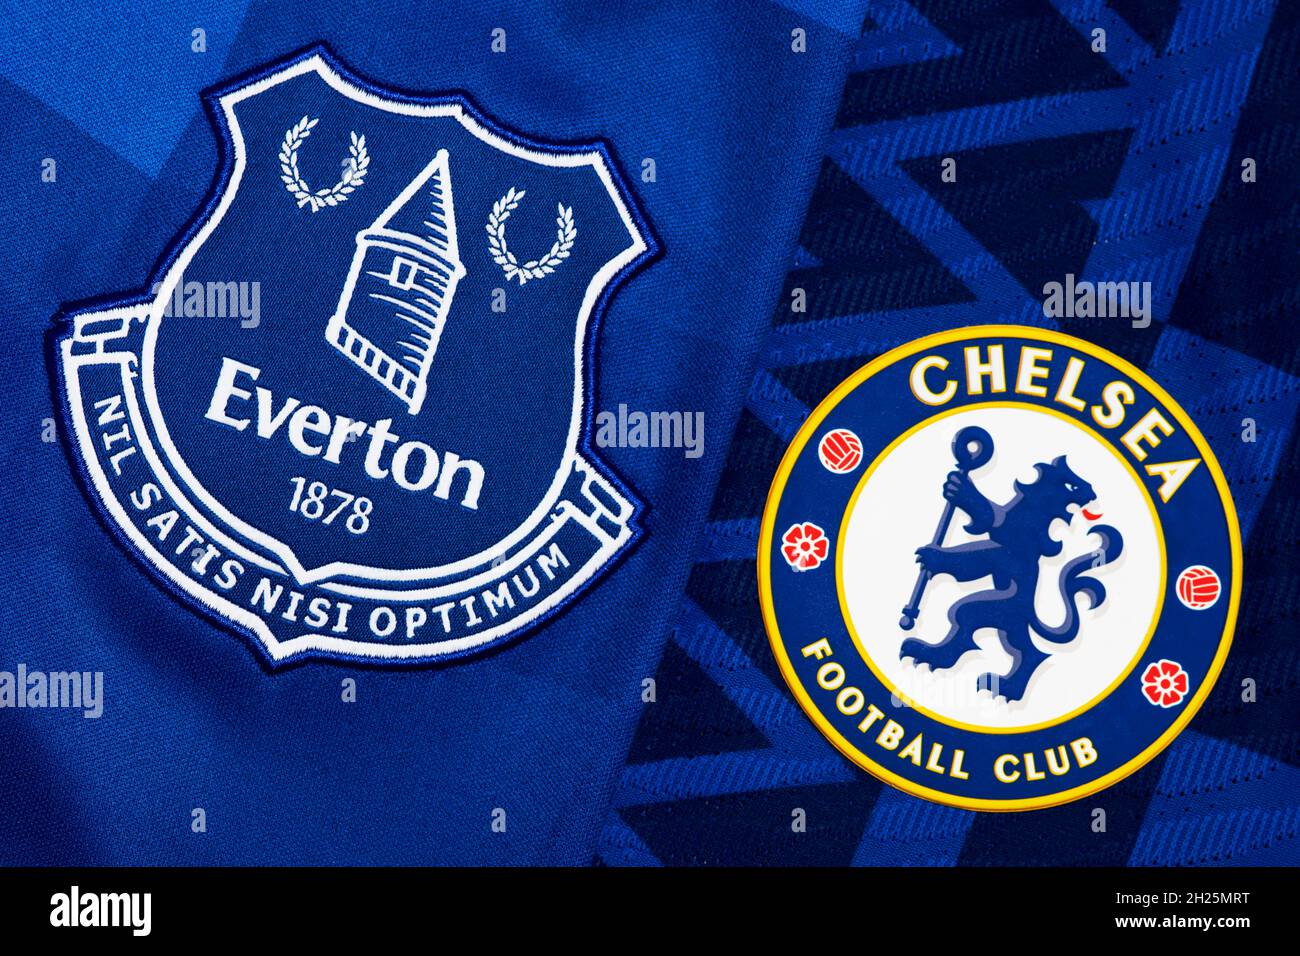 Nahaufnahme des Vereinswappens von Everton & Chelsea. Stockfoto